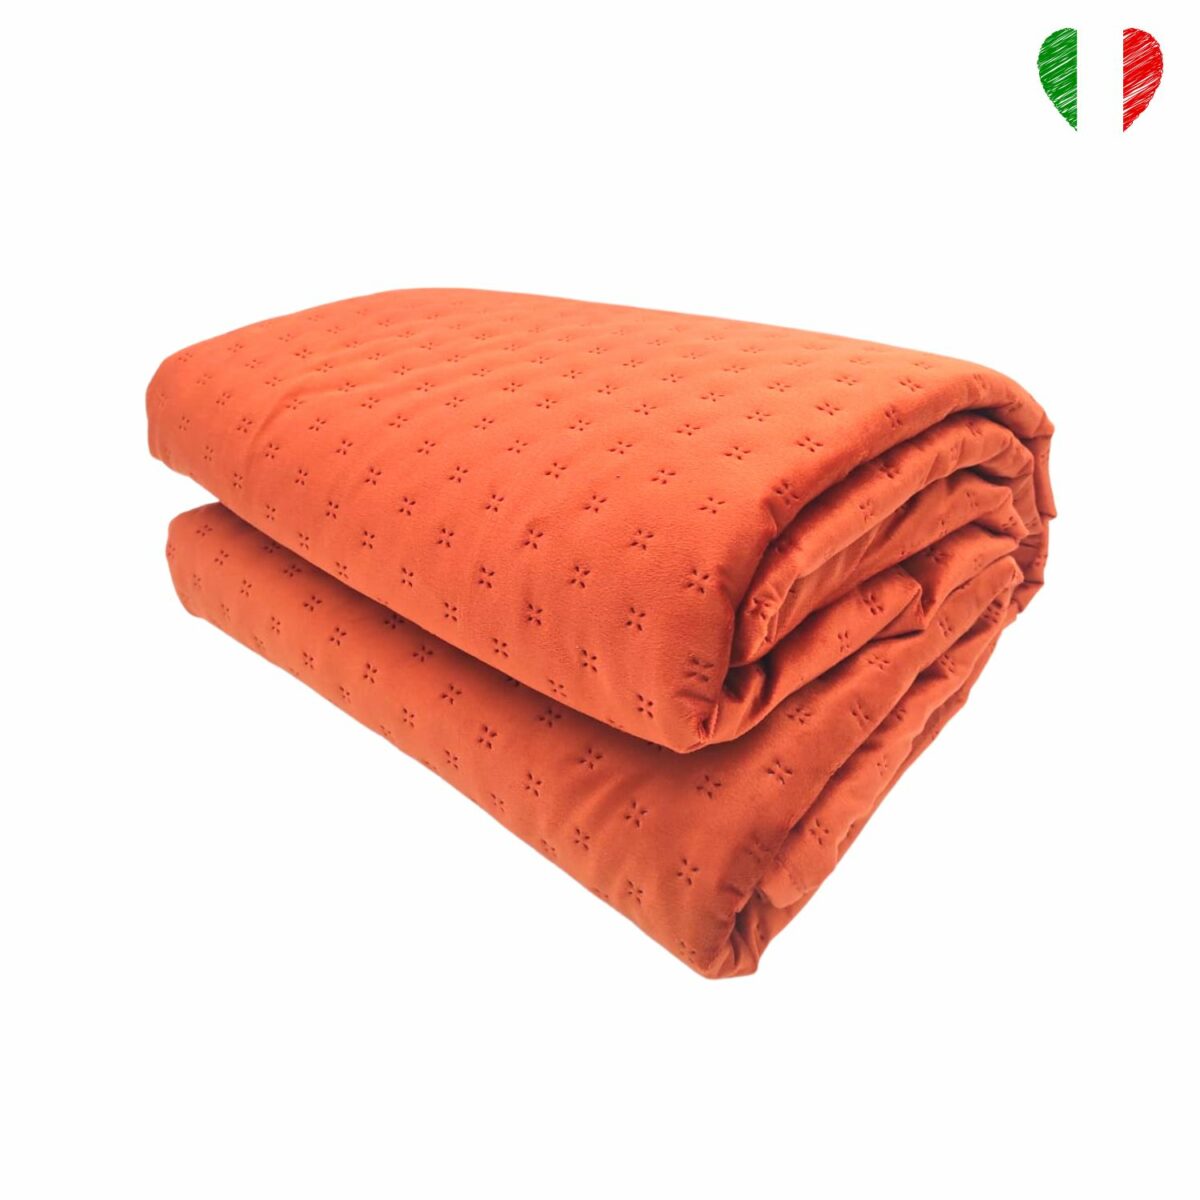 copriletto-dorian-ruggine-arancio-effetto-velluto-made-in-italy-trapuntino-primaverile-estivo-fold